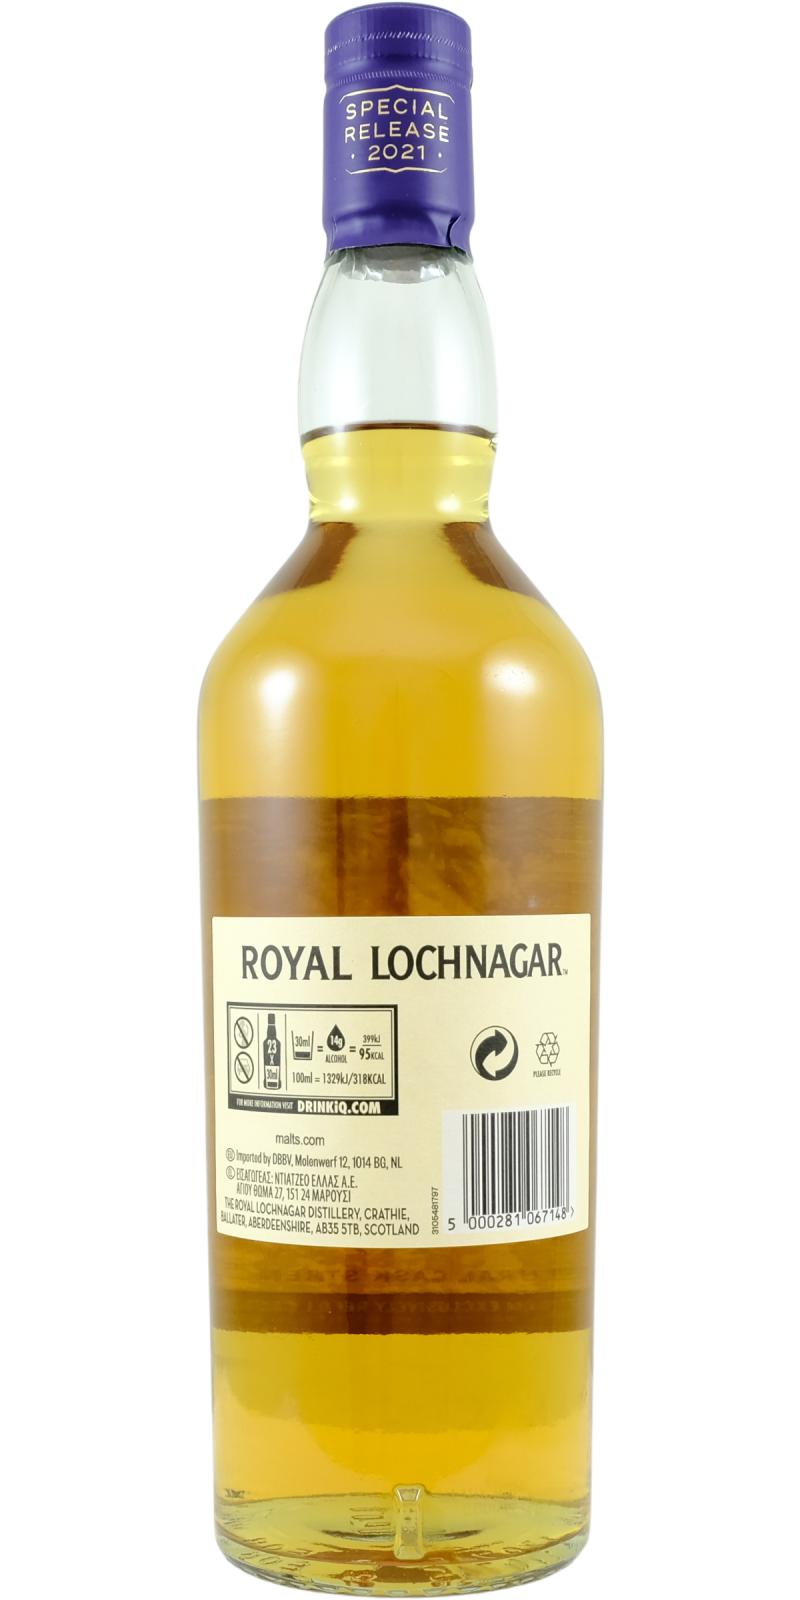 Royal Lochnagar 16-year-old